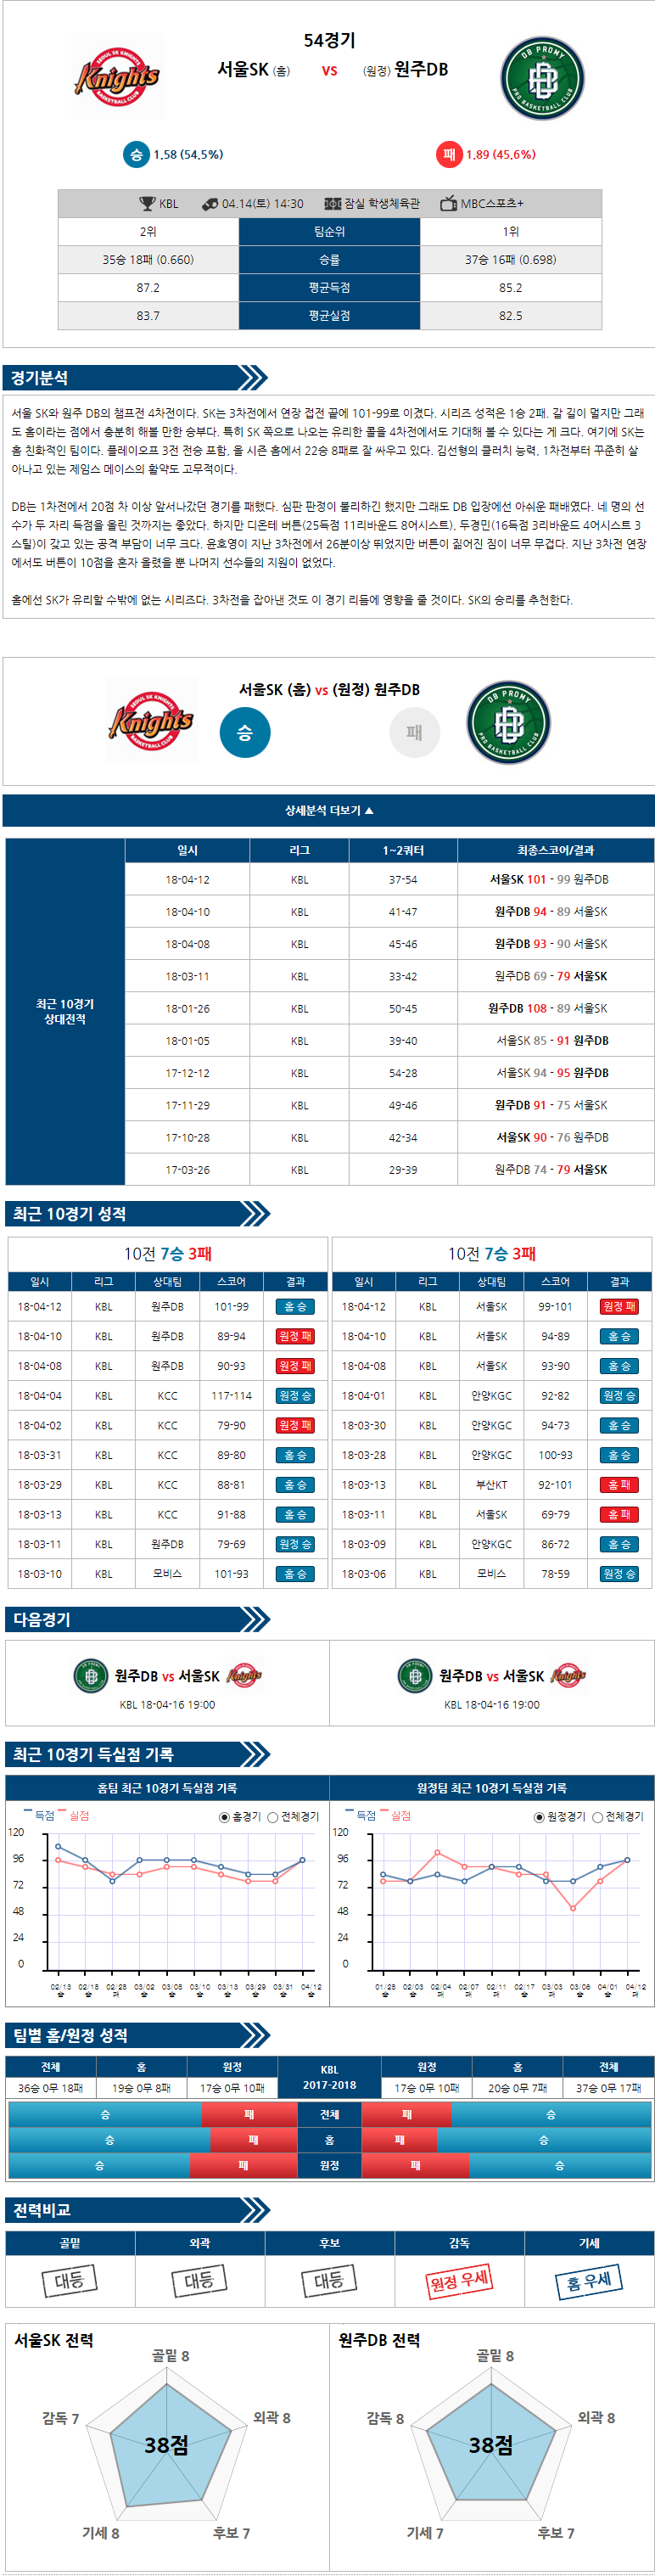 04-14 [KBL] 14:30 서울SK vs 원주동부